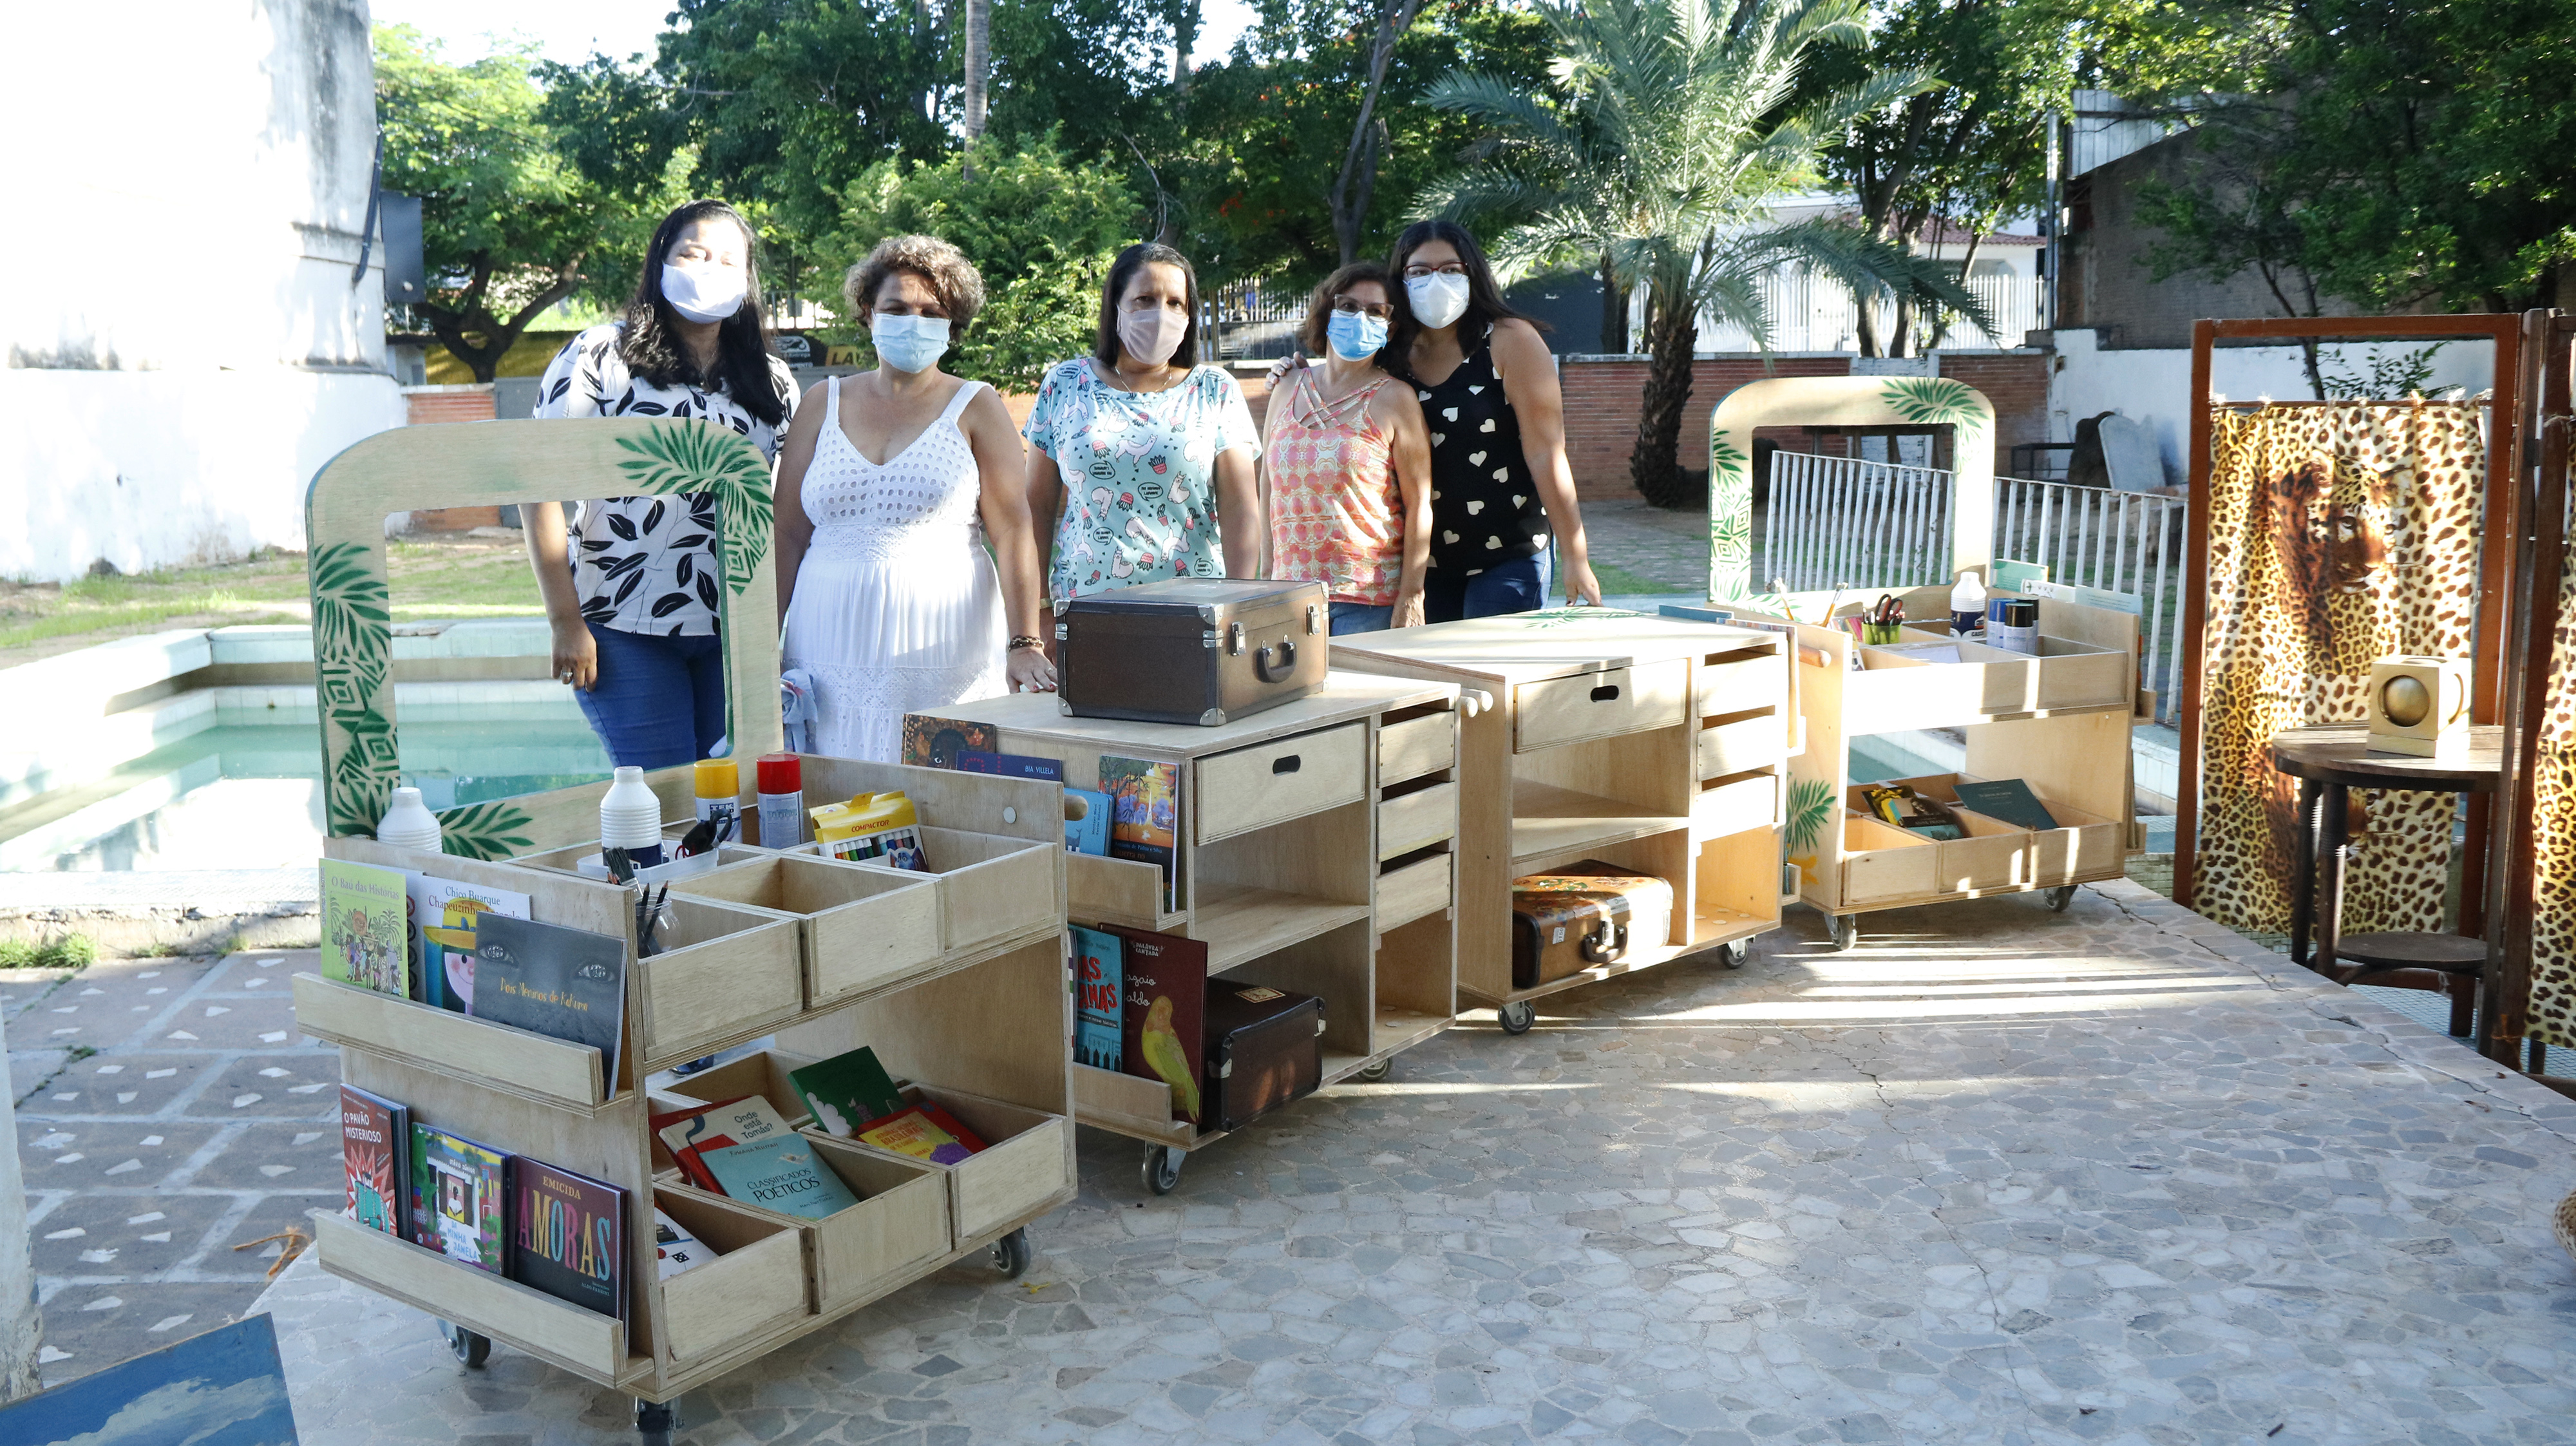 Grupo das construtoras com alguns dos trenzinhos literários feitos de madeira, com rodinhas, gavetas e compartimentos.